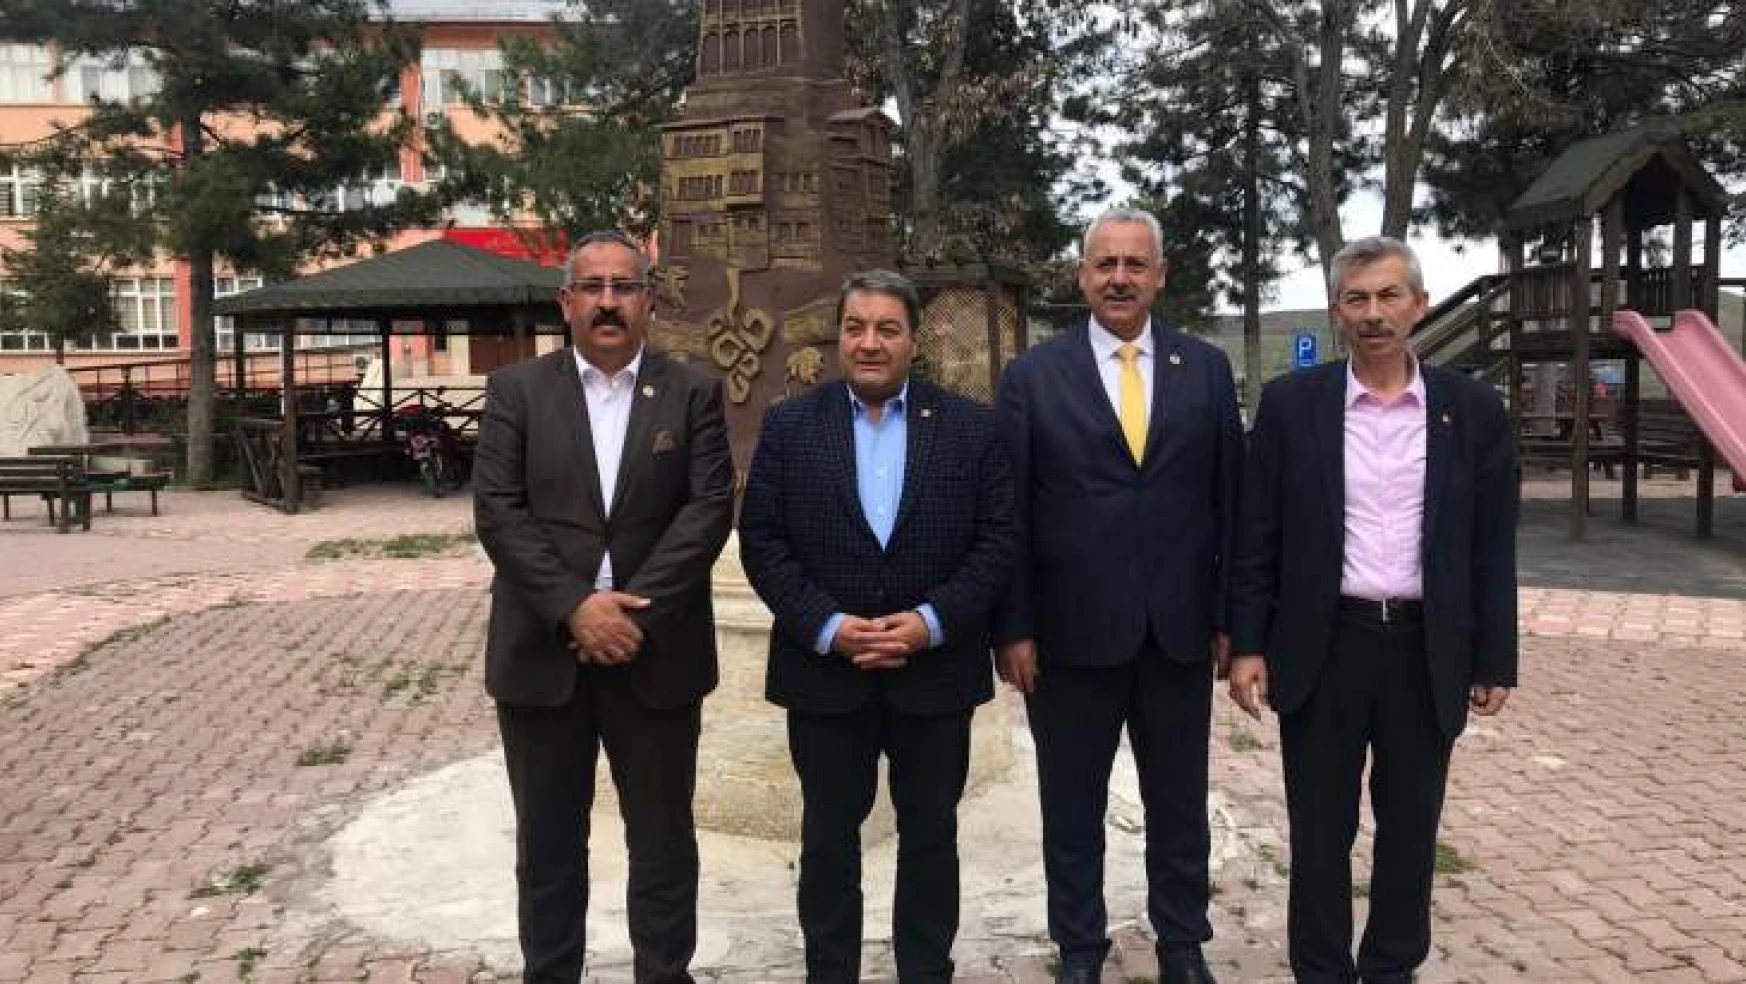 Fendoğlu Bölge Belediye Başkanları ile Biraraya Geldi